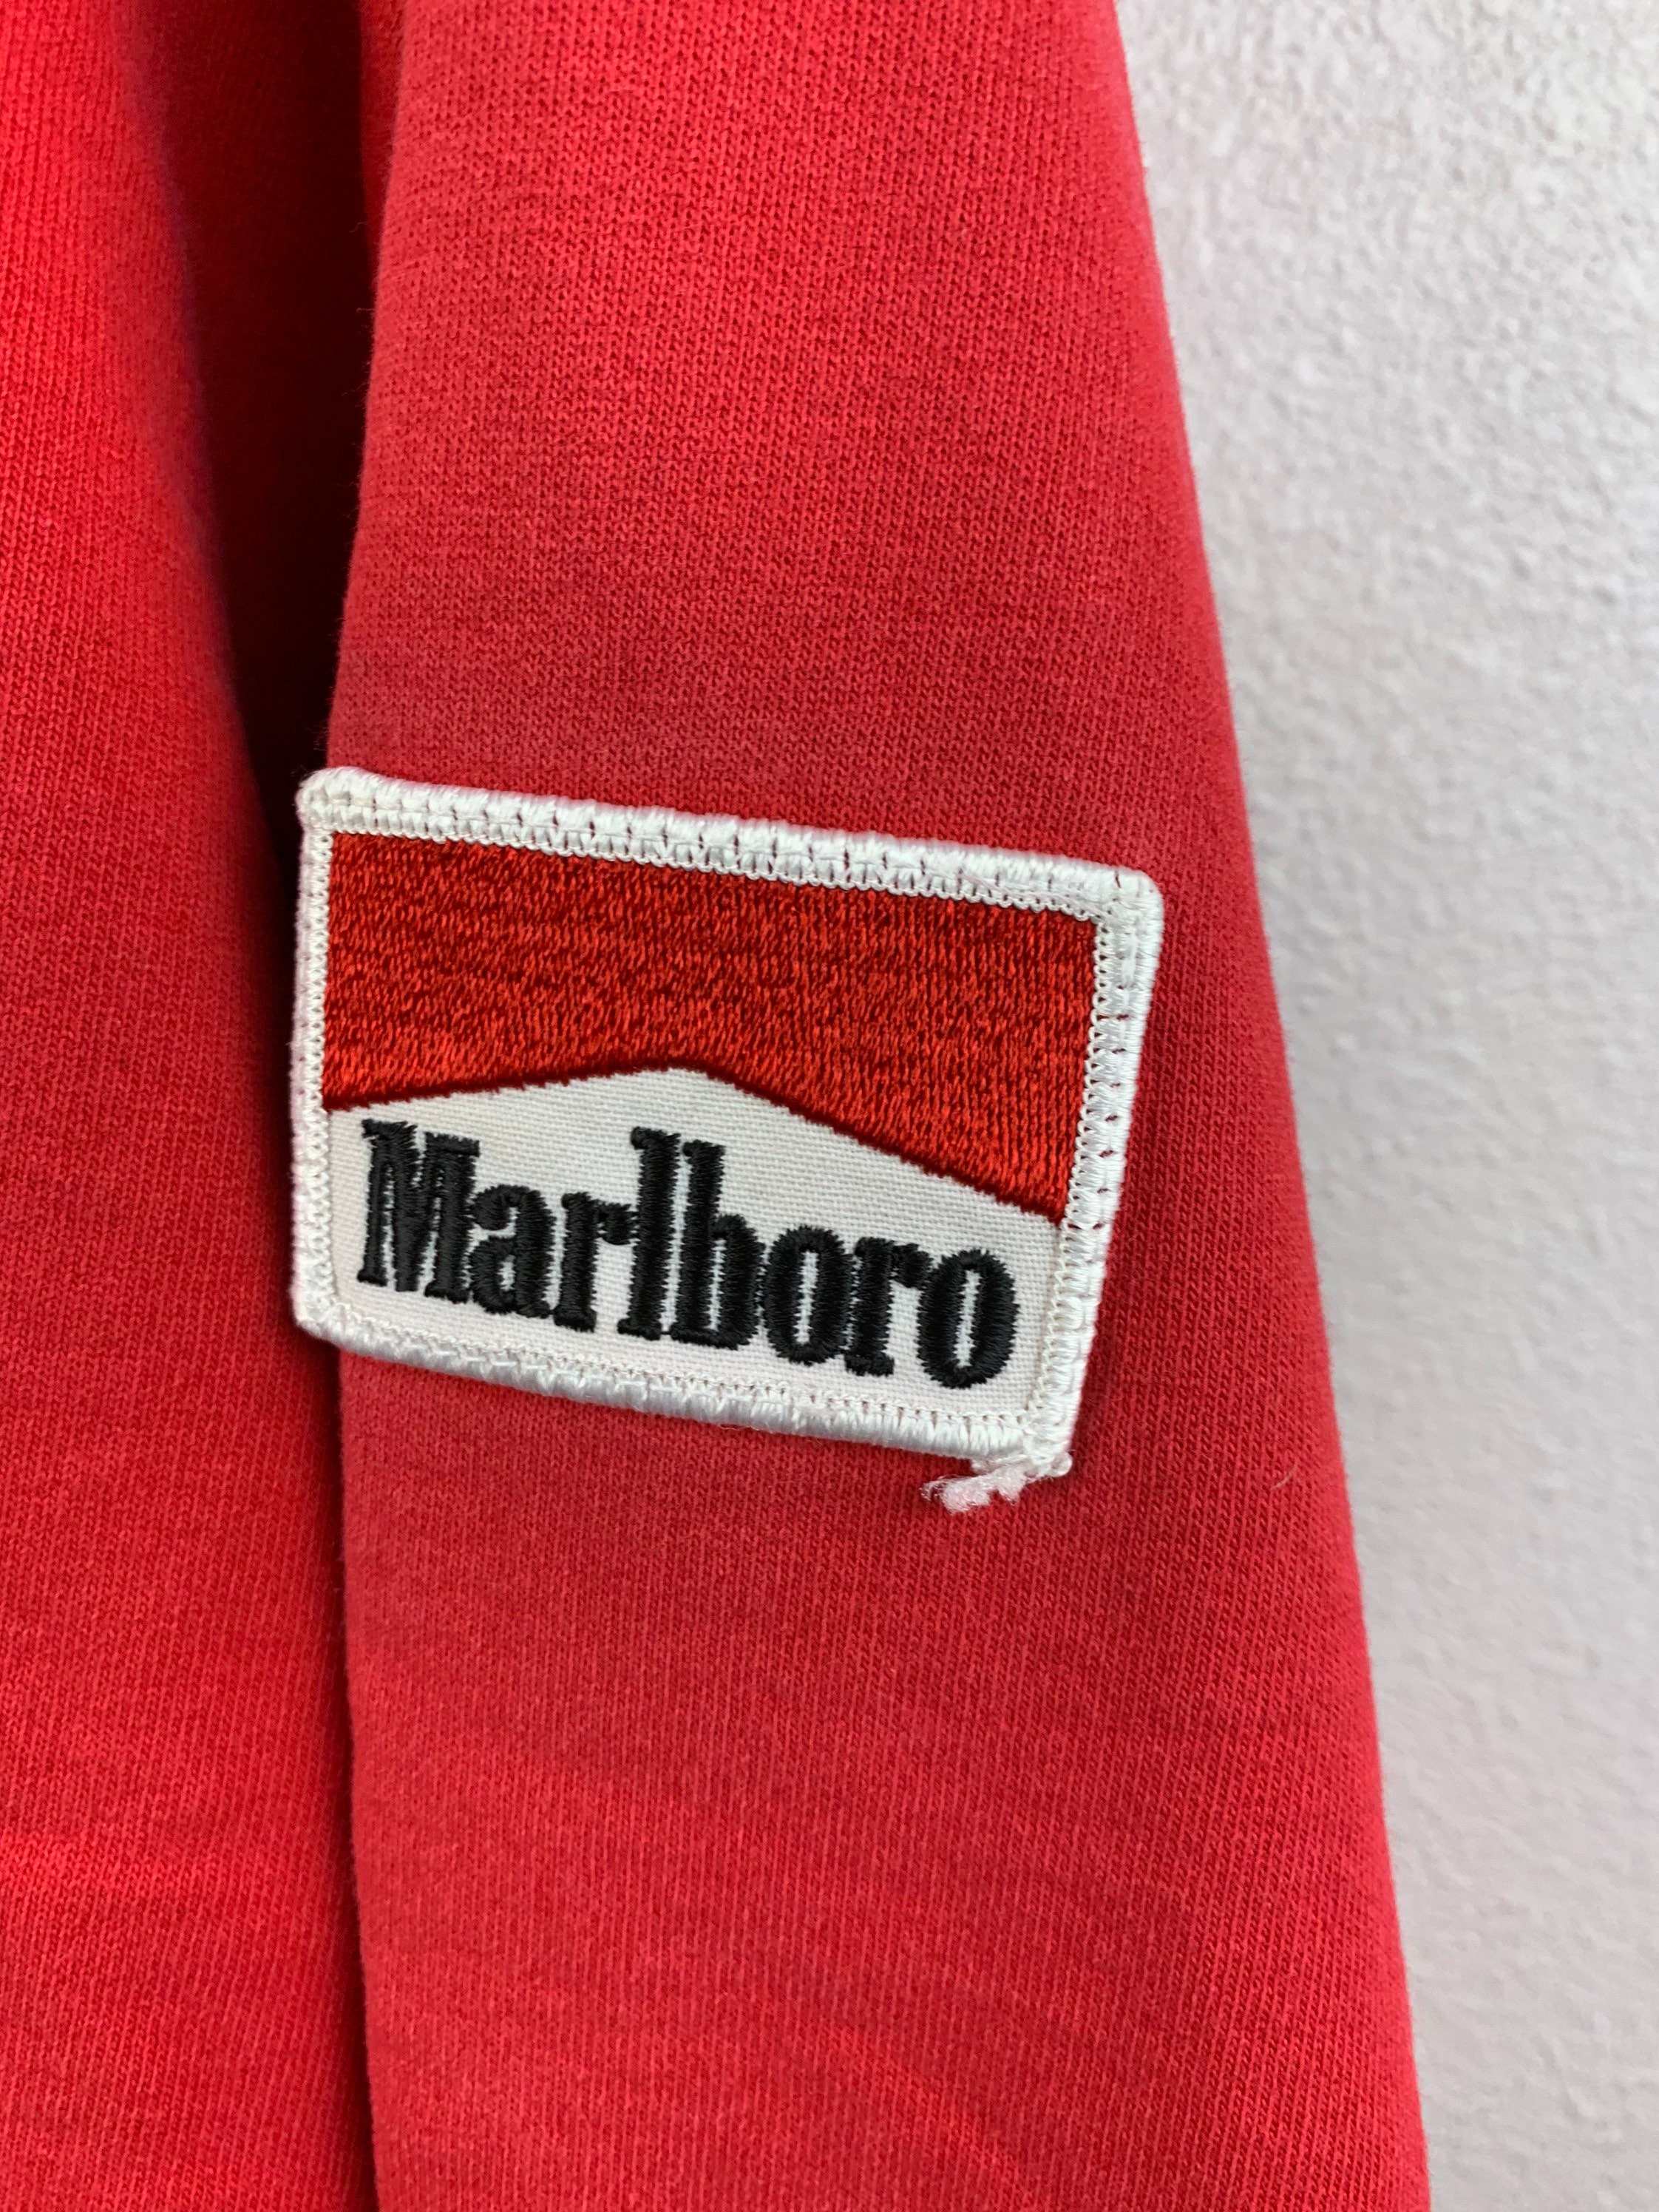 Vintage Marlboro hoodie sweatshirt | Etsy